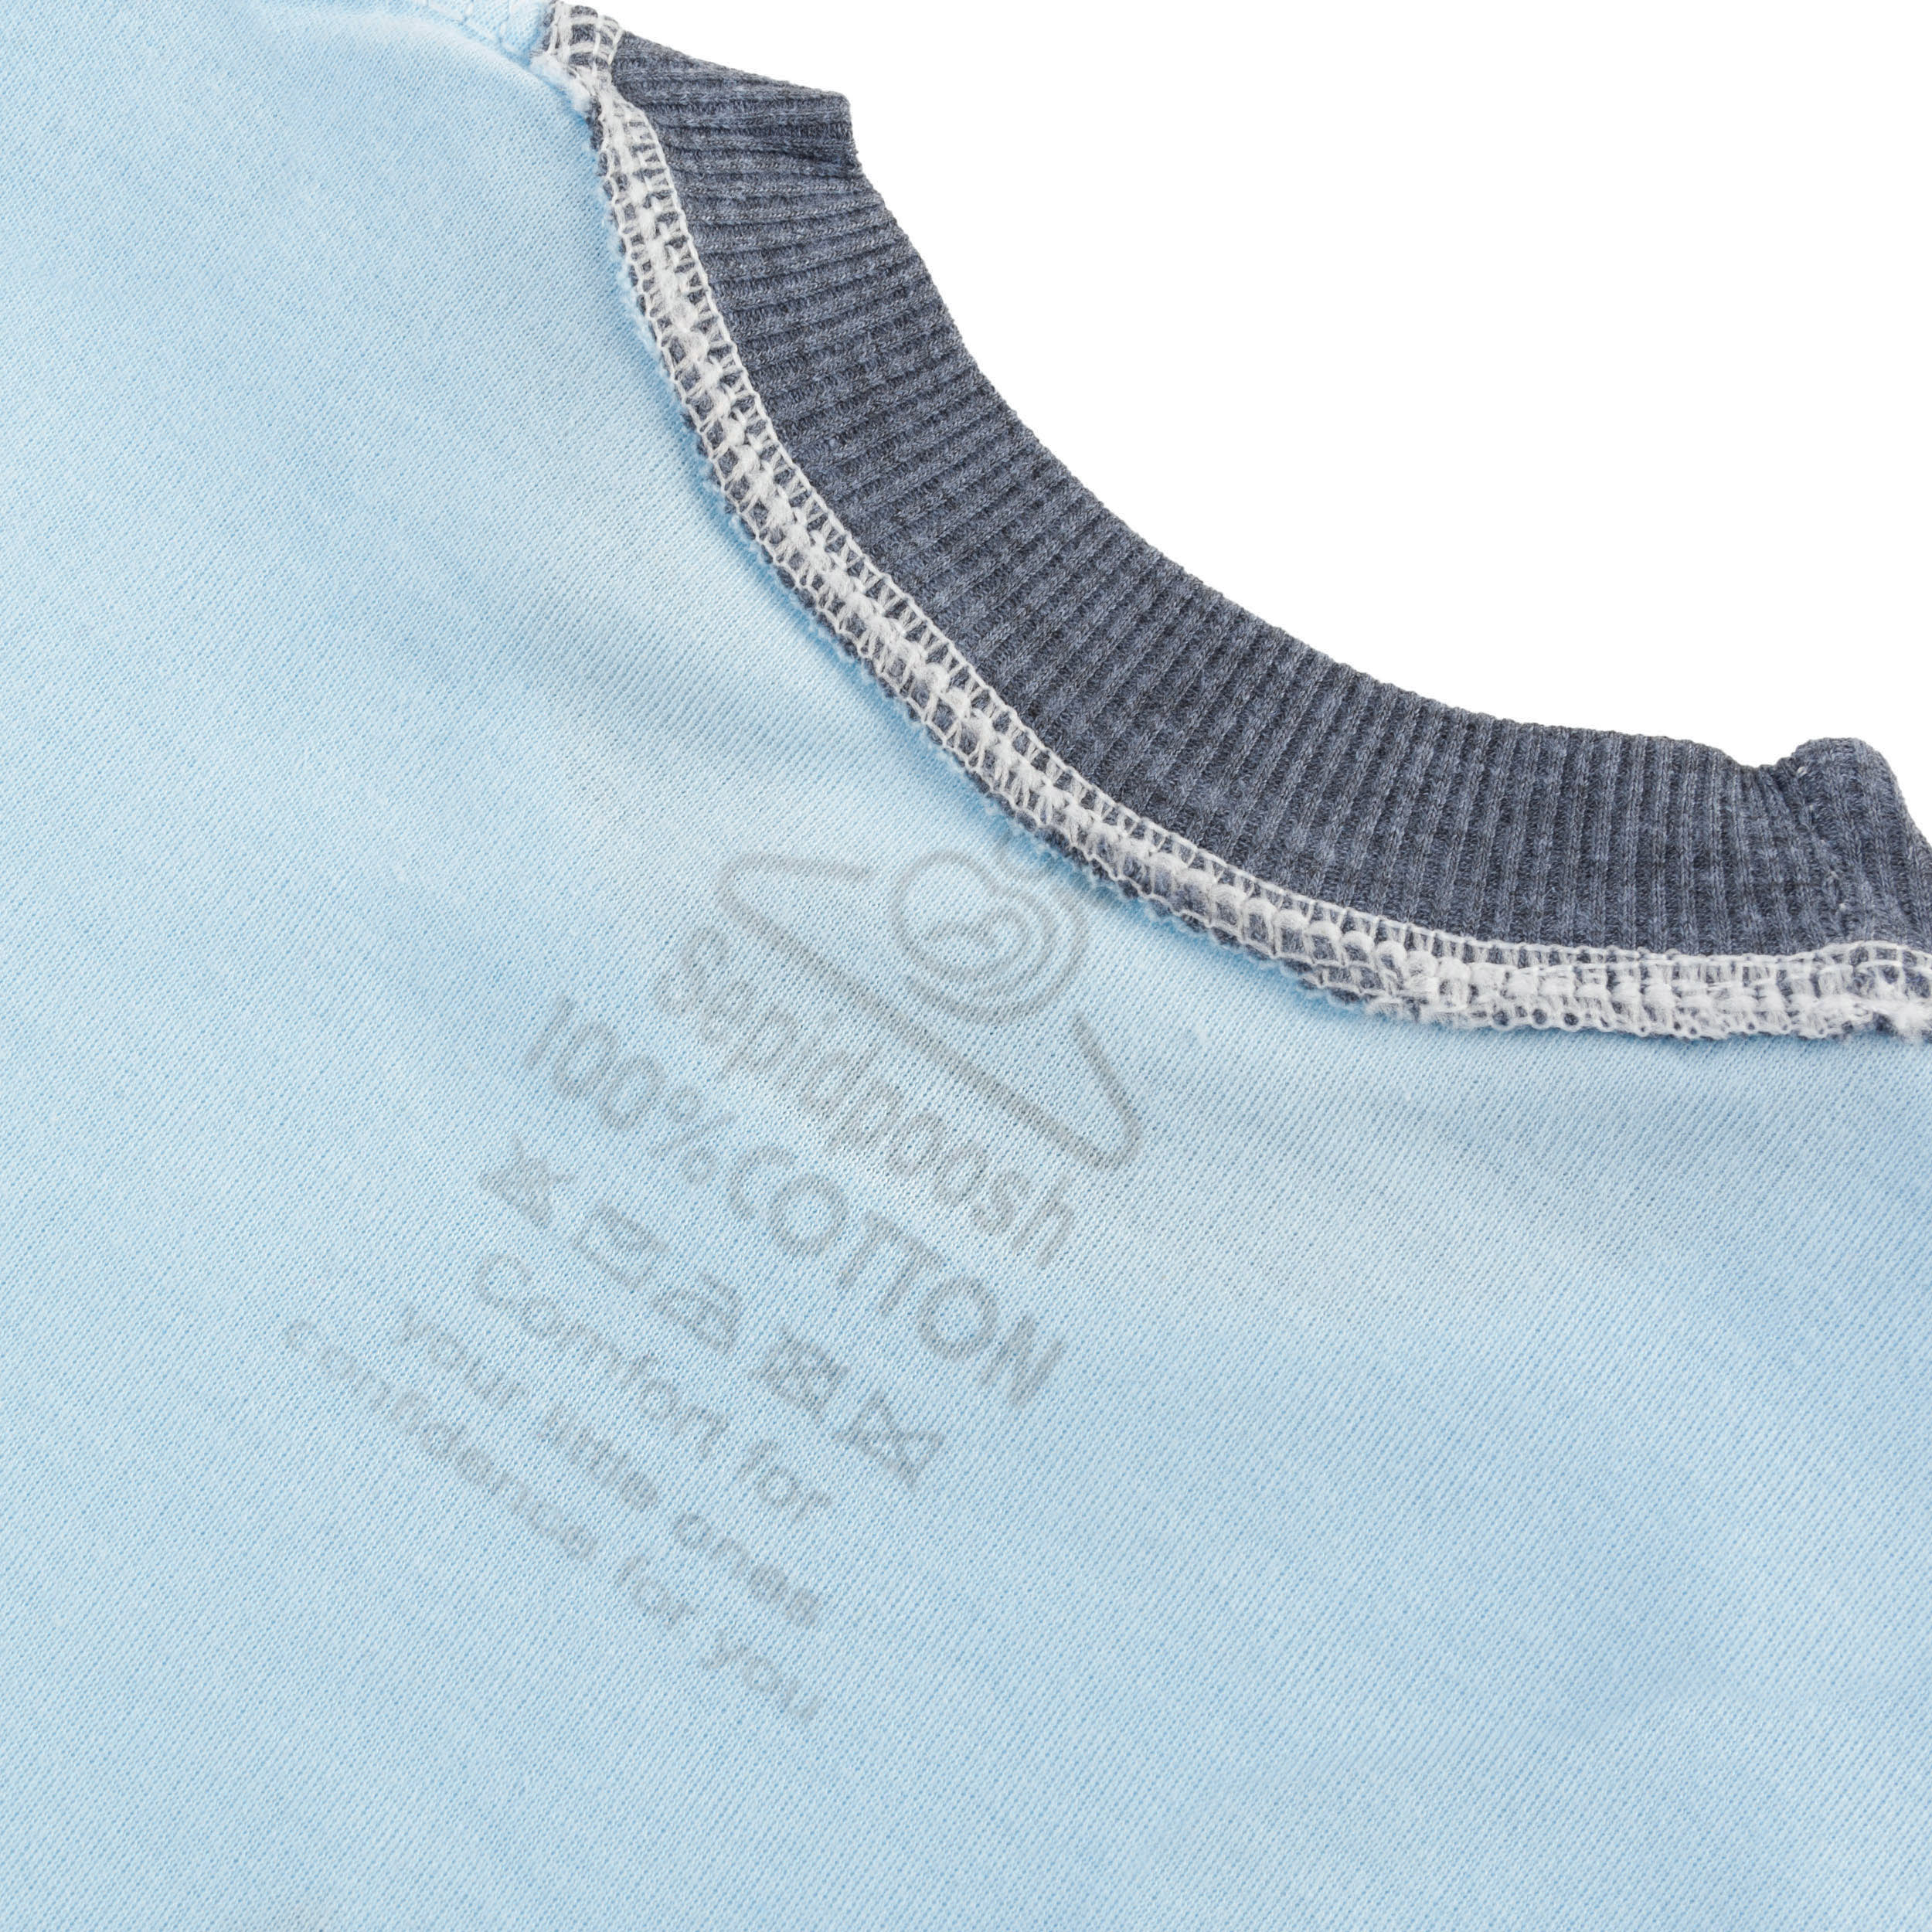 ست تی شرت آستین کوتاه و شلوارک بچگانه سپیدپوش مدل آفتاب پرست کد 1402583 -  - 4